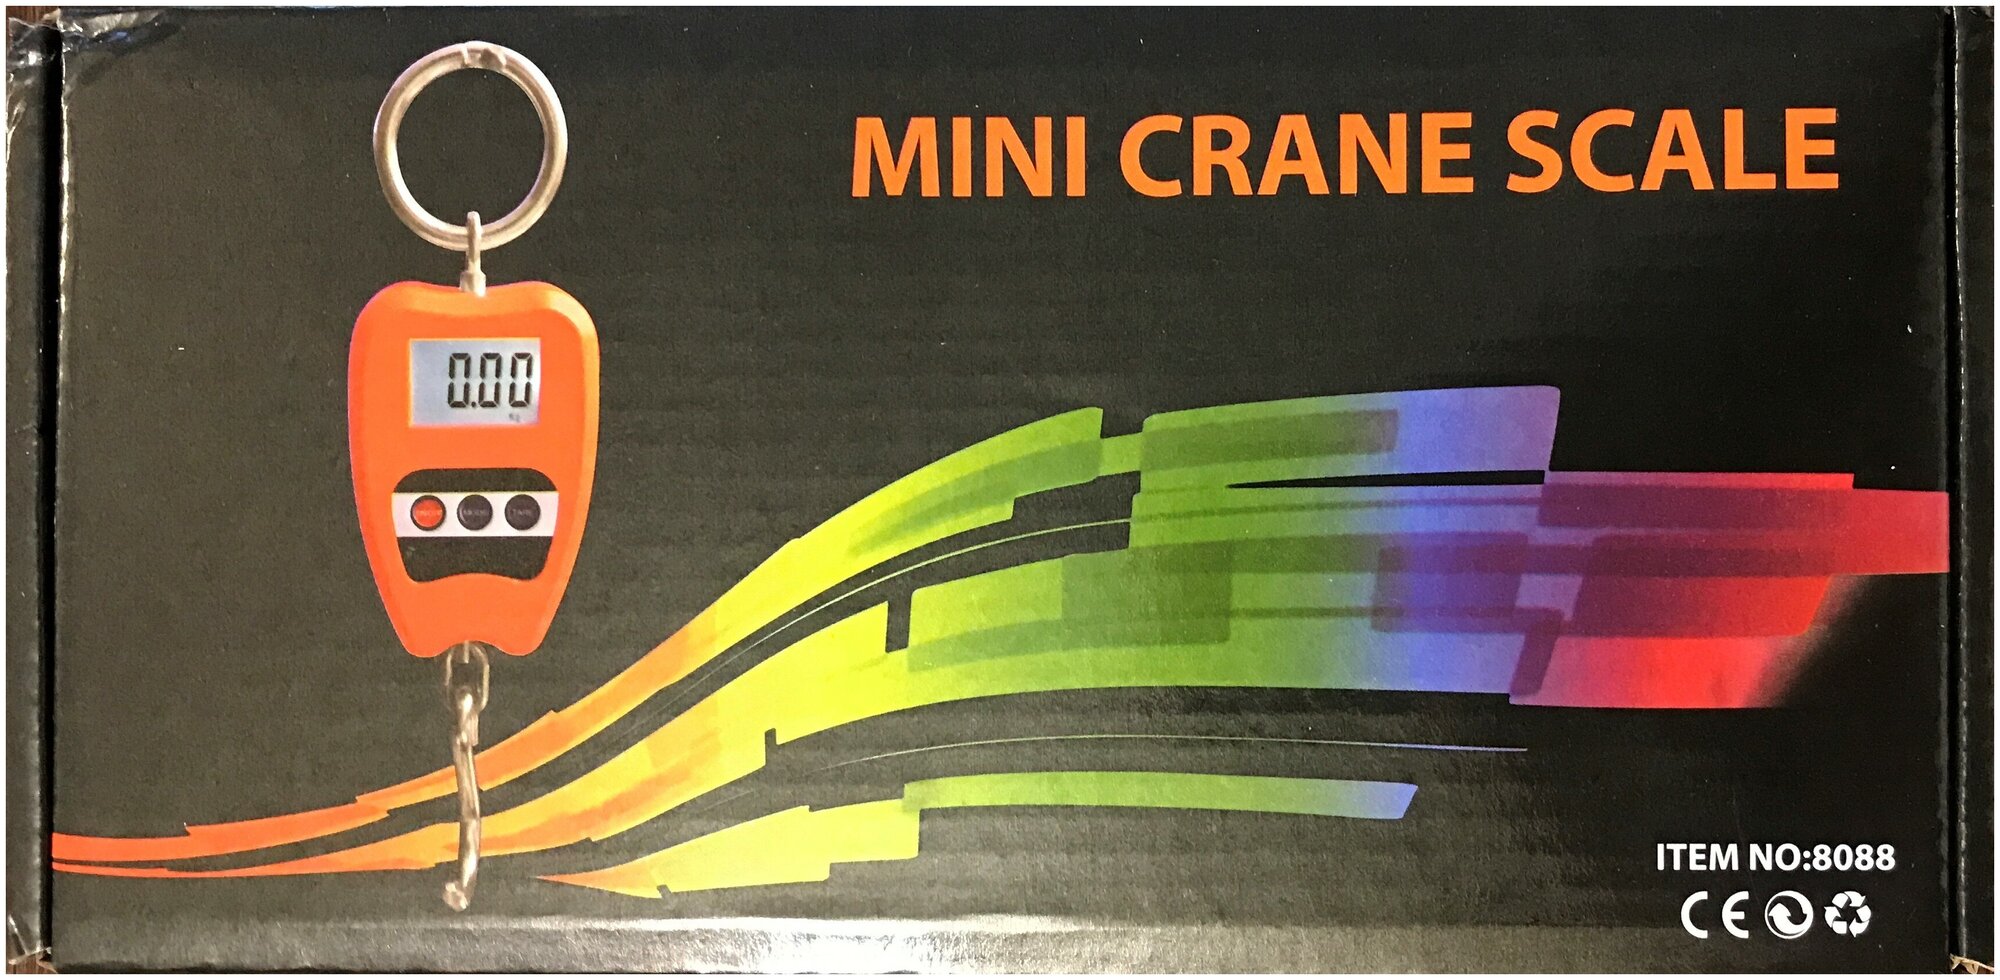 Весы подвесные крановые, 200 кг. JUANJUAN Mini Crane Scale цифровой безмен из нержавеющей стали с ЖК дисплеем.